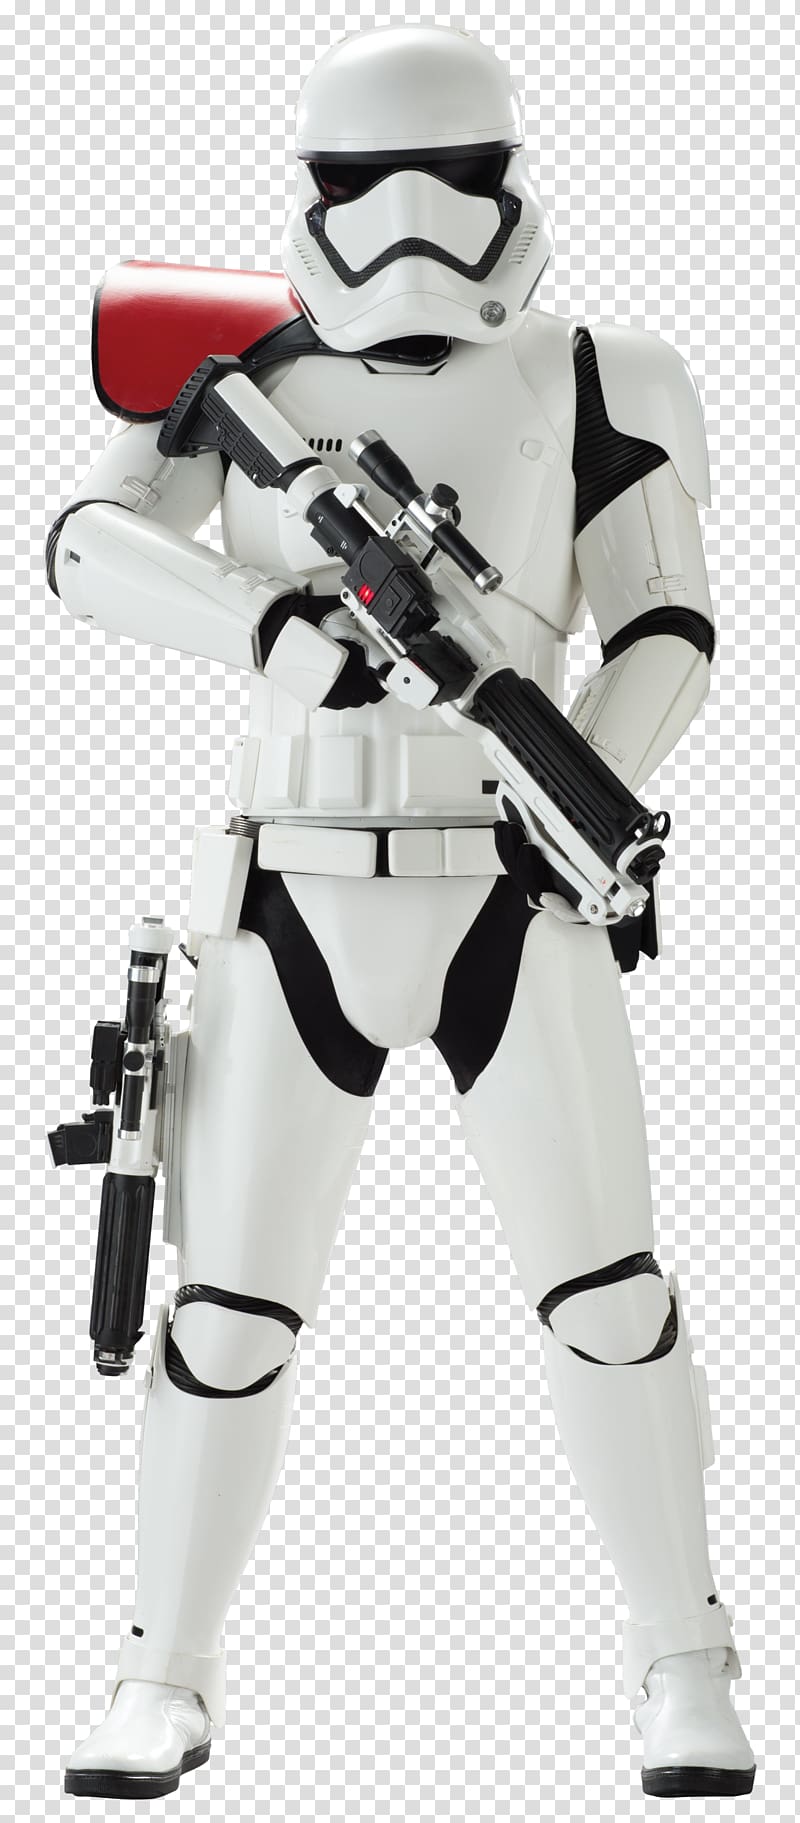 Storm Trooper illustration, General Hux Kylo Ren Stormtrooper Luke Skywalker Captain Phasma, stormtrooper transparent background PNG clipart